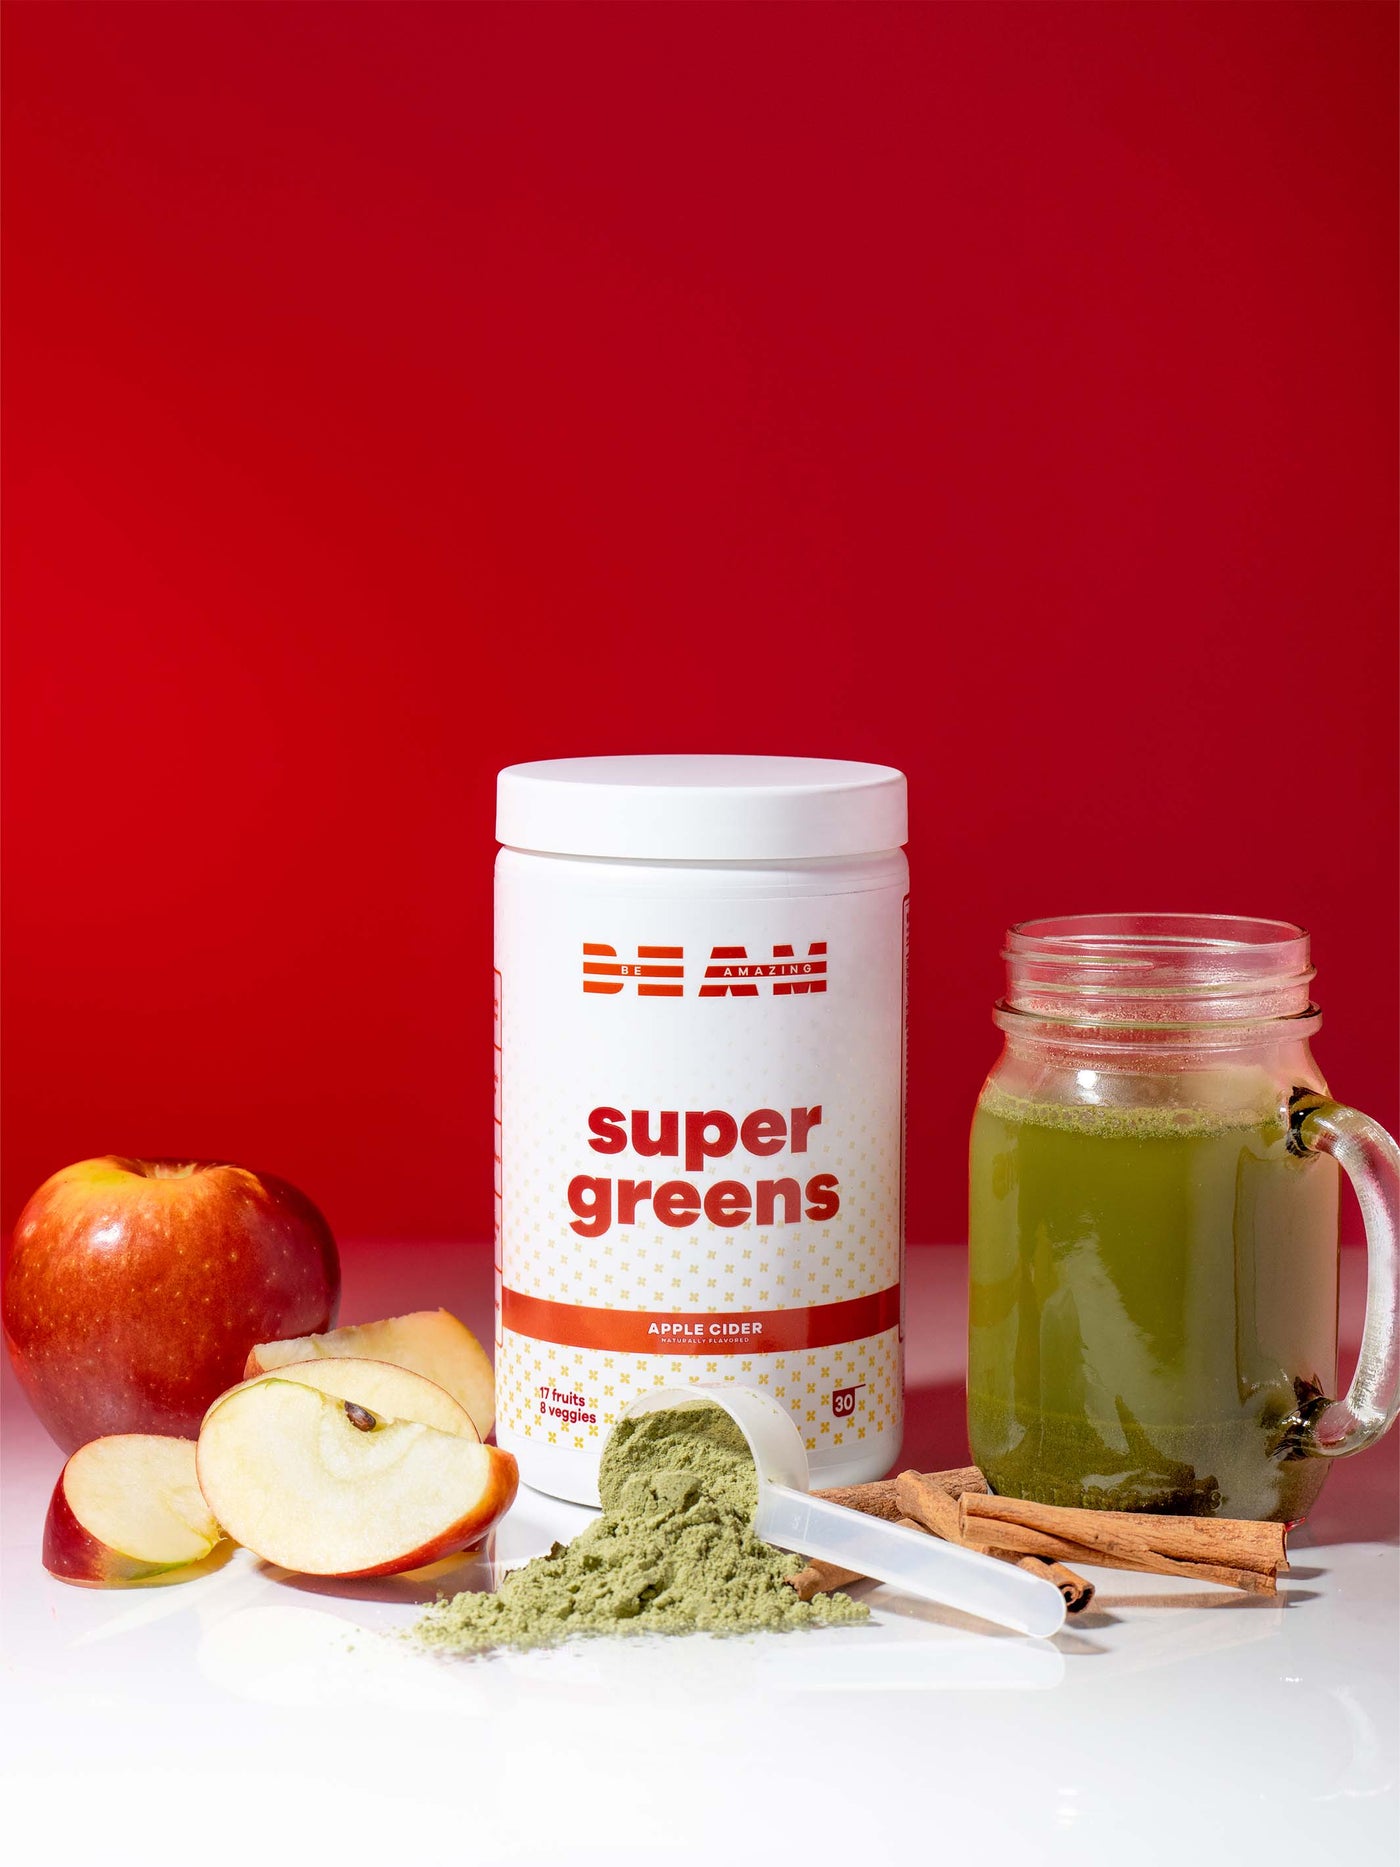 BEAM Super Greens Apple Cider Lifestyle 1#30 Servings / Apple Cider